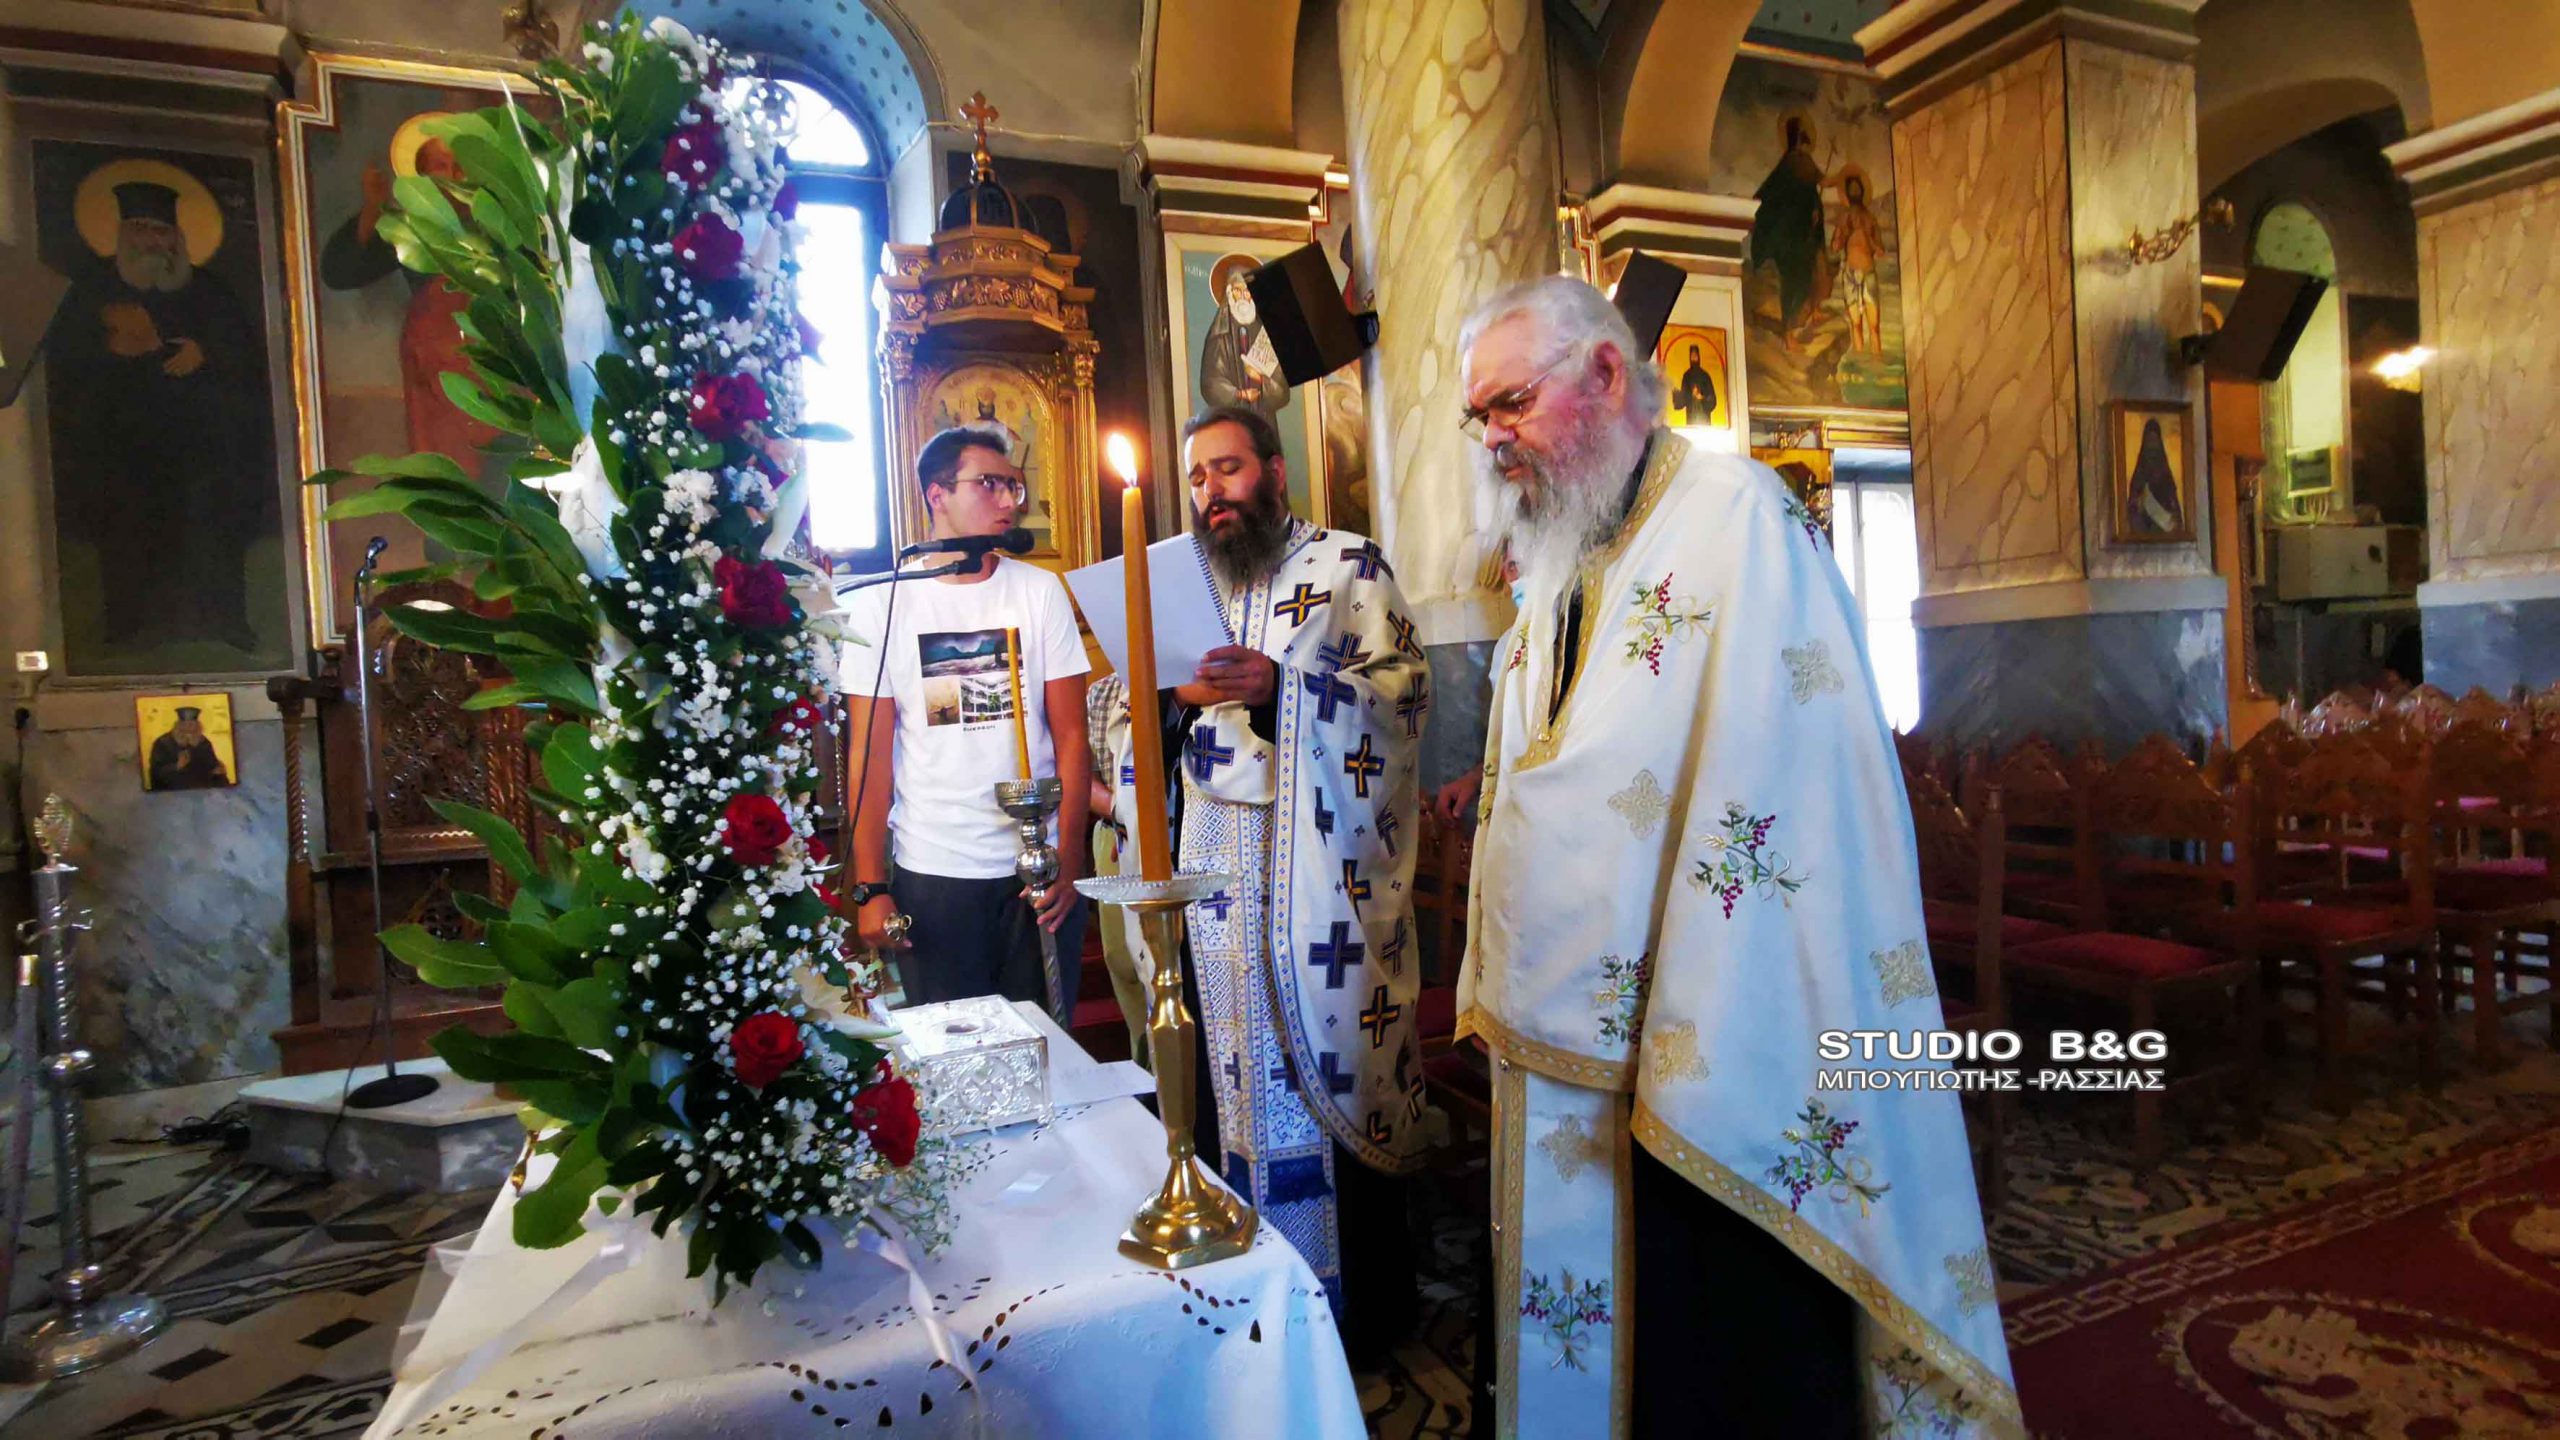 Άργος: Η Εορτή του Αγίου Καλλινίκου Εδέσσης στον Ι.Ν. Κοιμήσεως Θεοτόκου